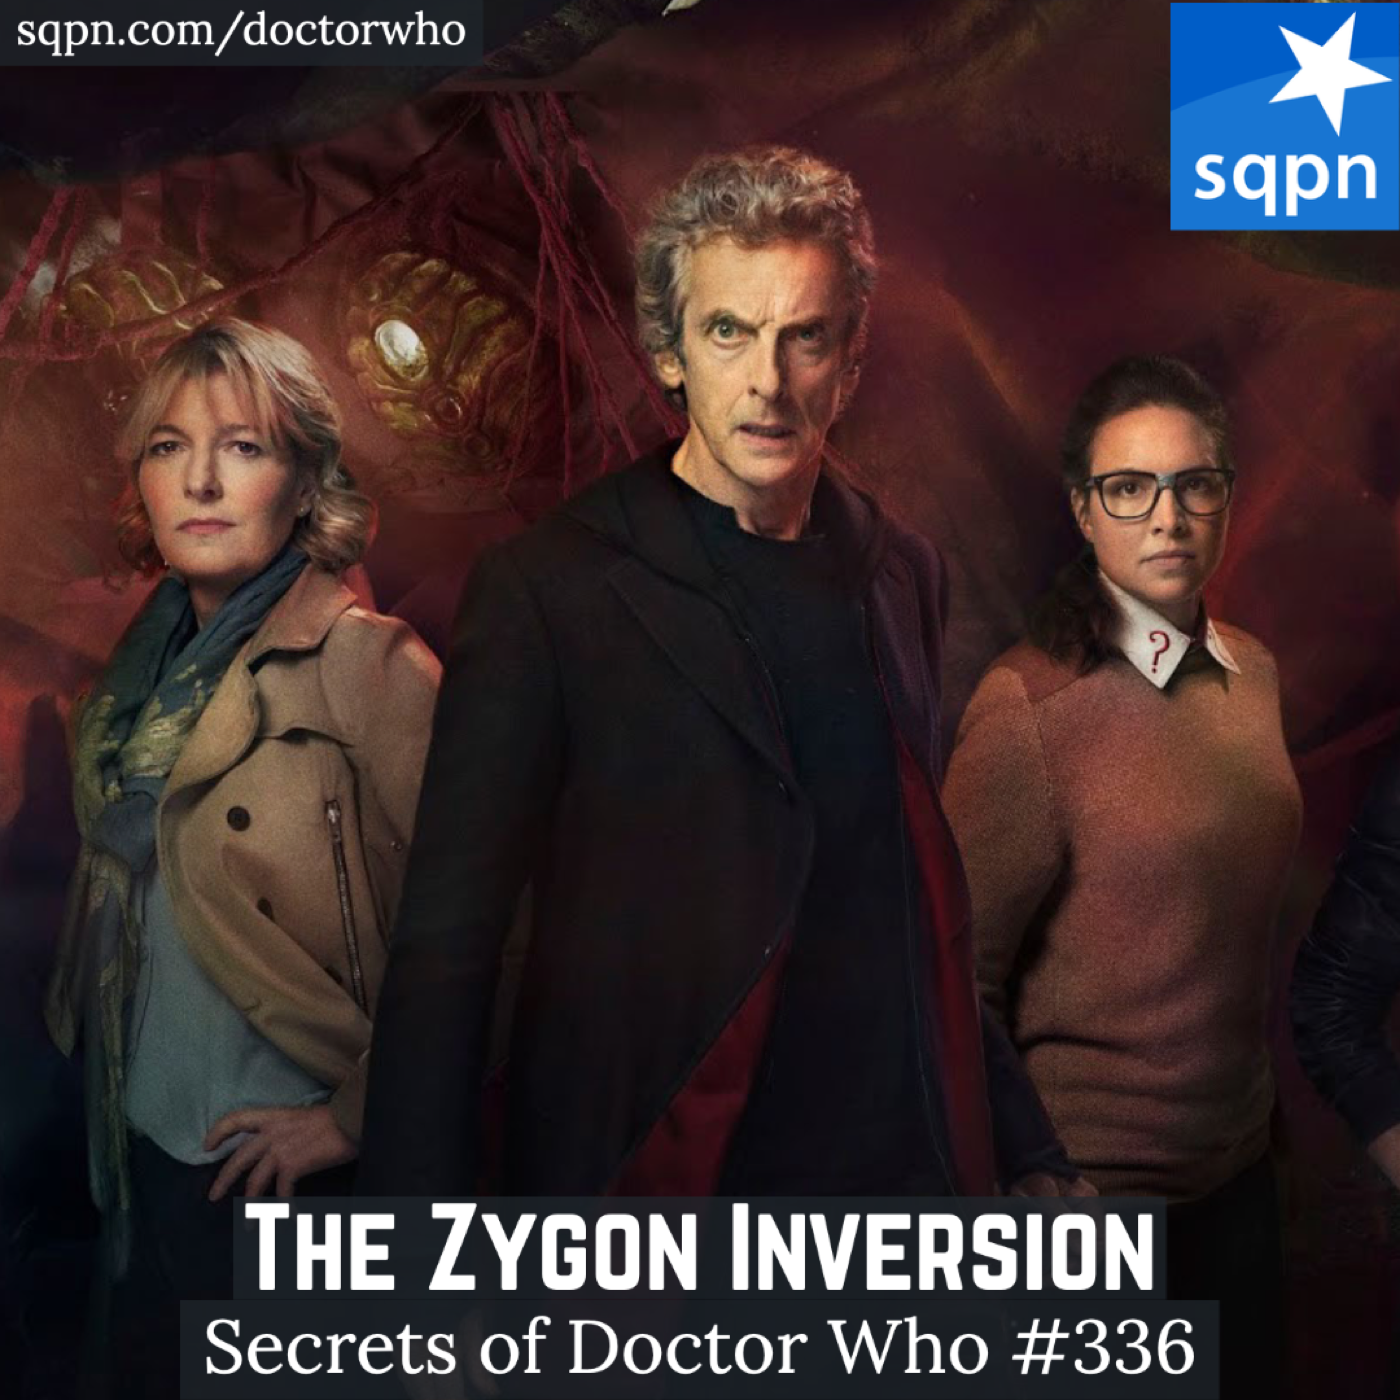 The Zygon Inversion